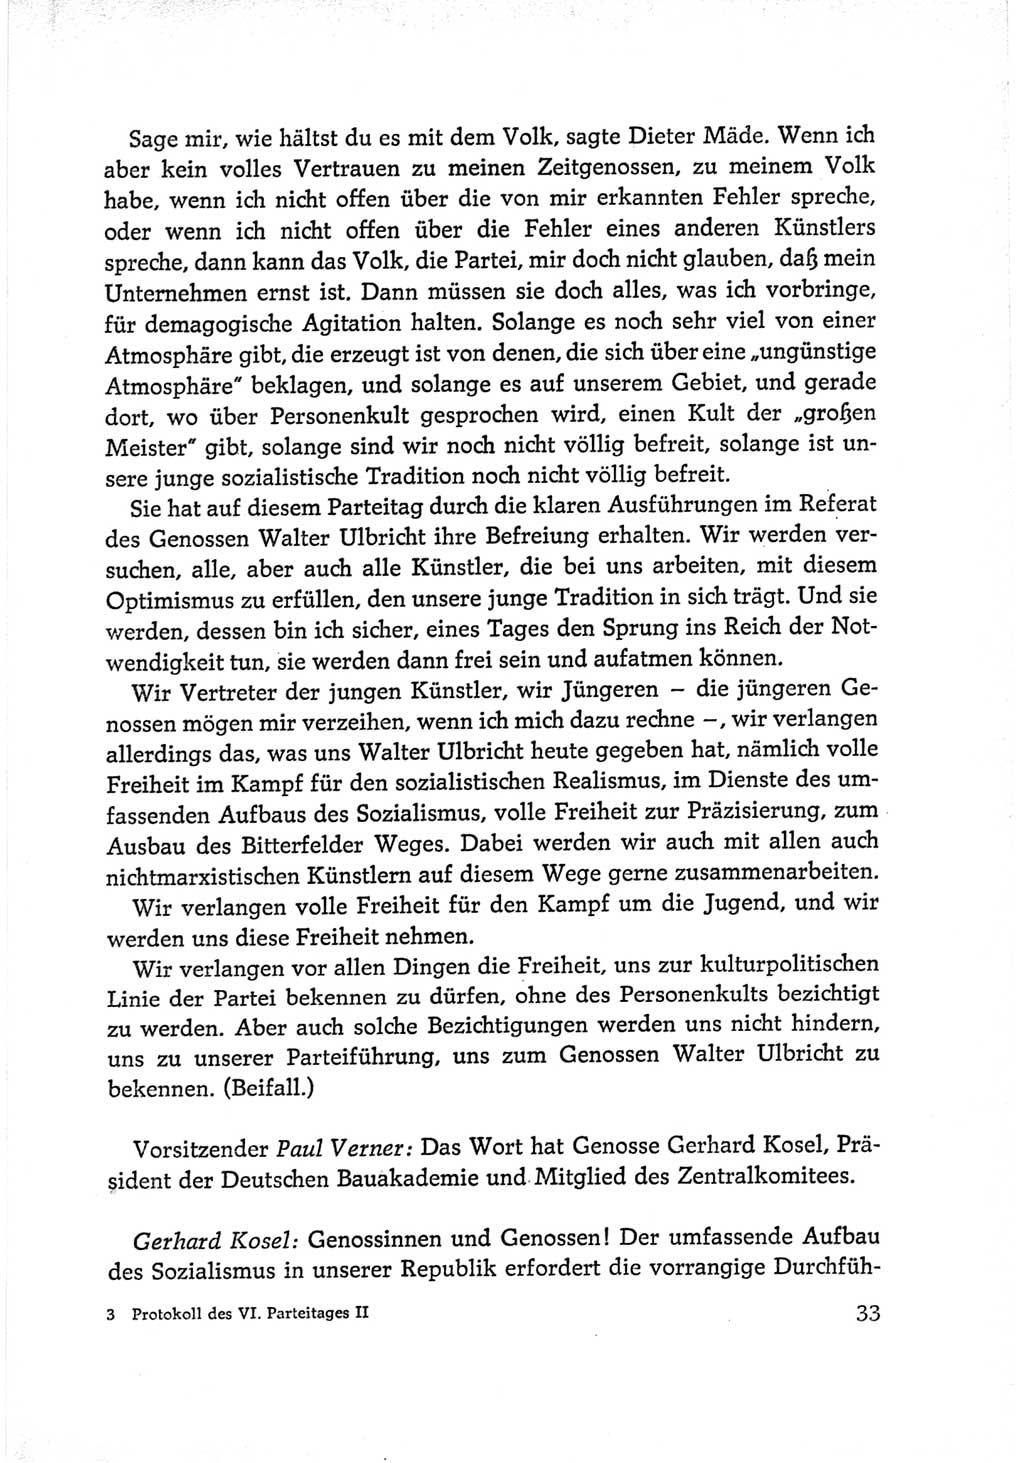 Protokoll der Verhandlungen des Ⅵ. Parteitages der Sozialistischen Einheitspartei Deutschlands (SED) [Deutsche Demokratische Republik (DDR)] 1963, Band Ⅱ, Seite 33 (Prot. Verh. Ⅵ. PT SED DDR 1963, Bd. Ⅱ, S. 33)